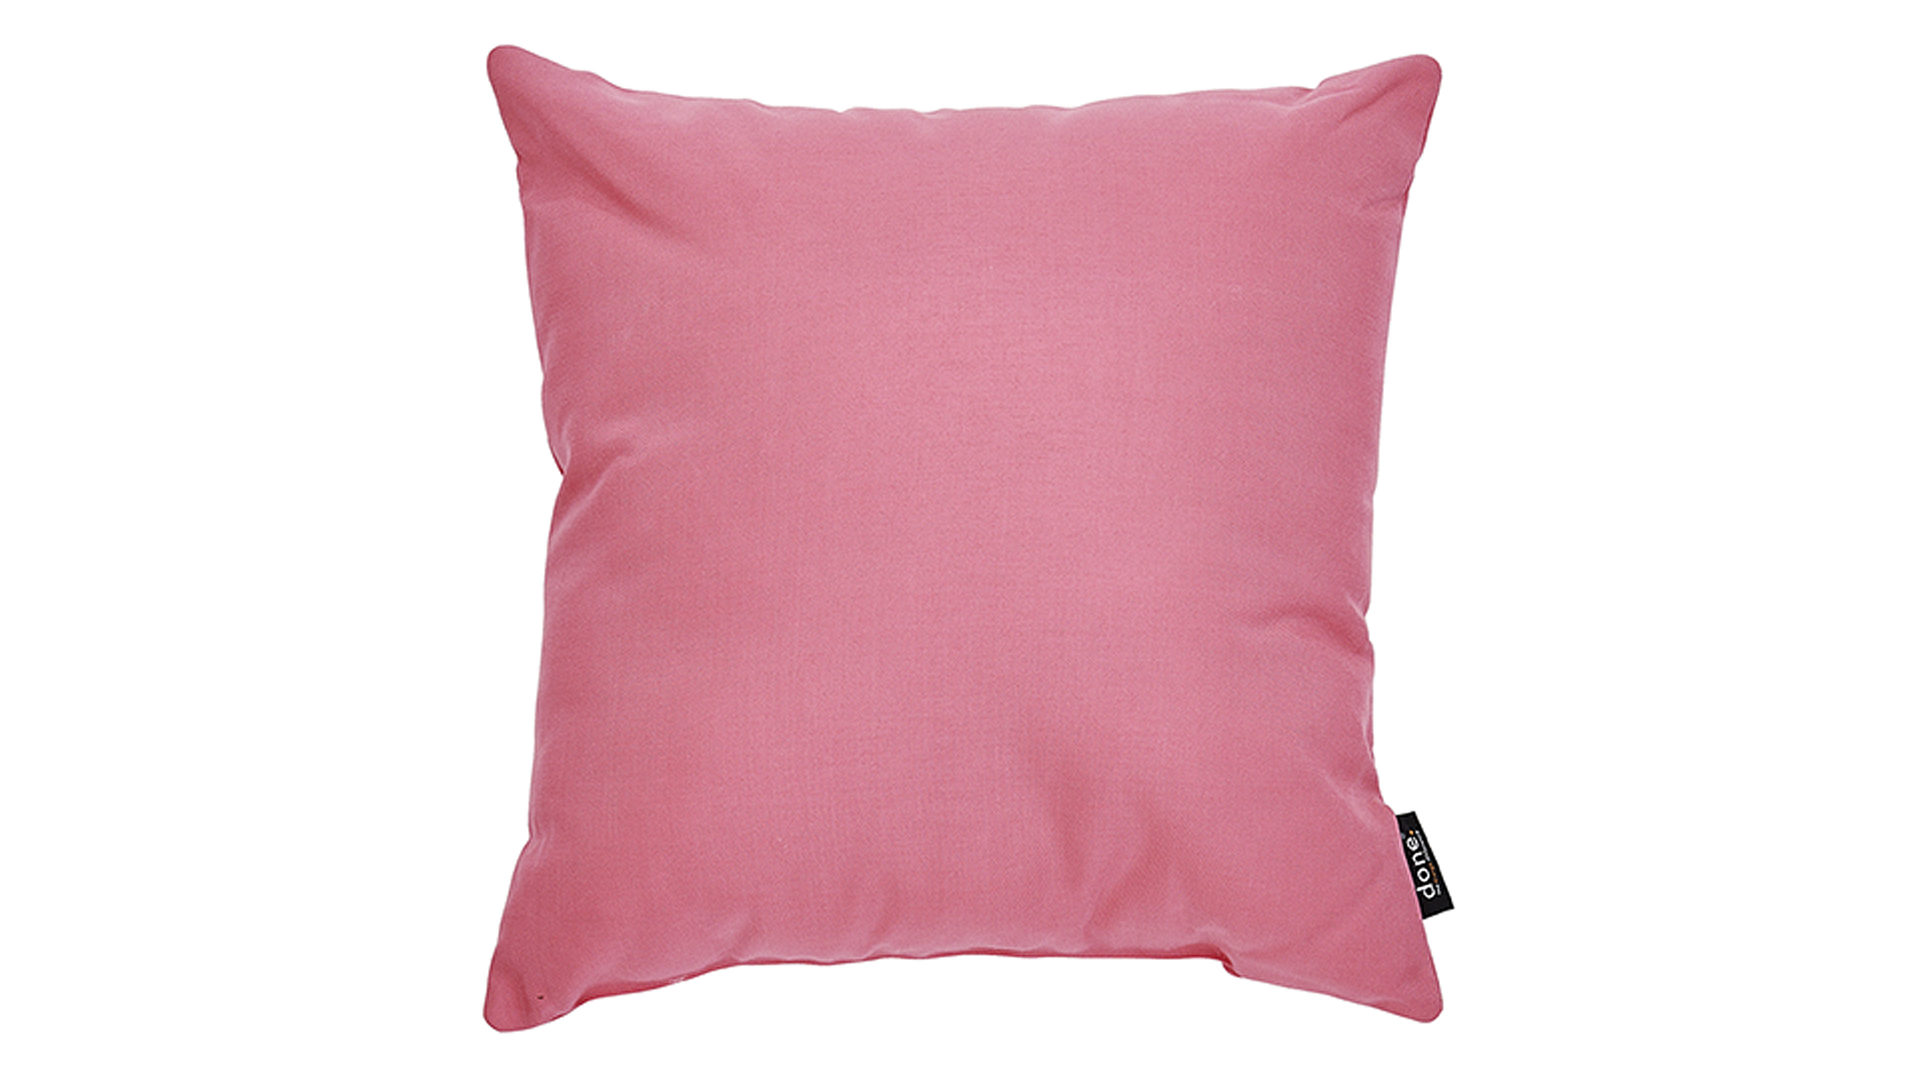 Einzelkissen Done.® aus Kunstfaser in Pink done.® Kissen Cushion Outside blossomfarbener Olefinbezug – ca. 45 x 45 cm